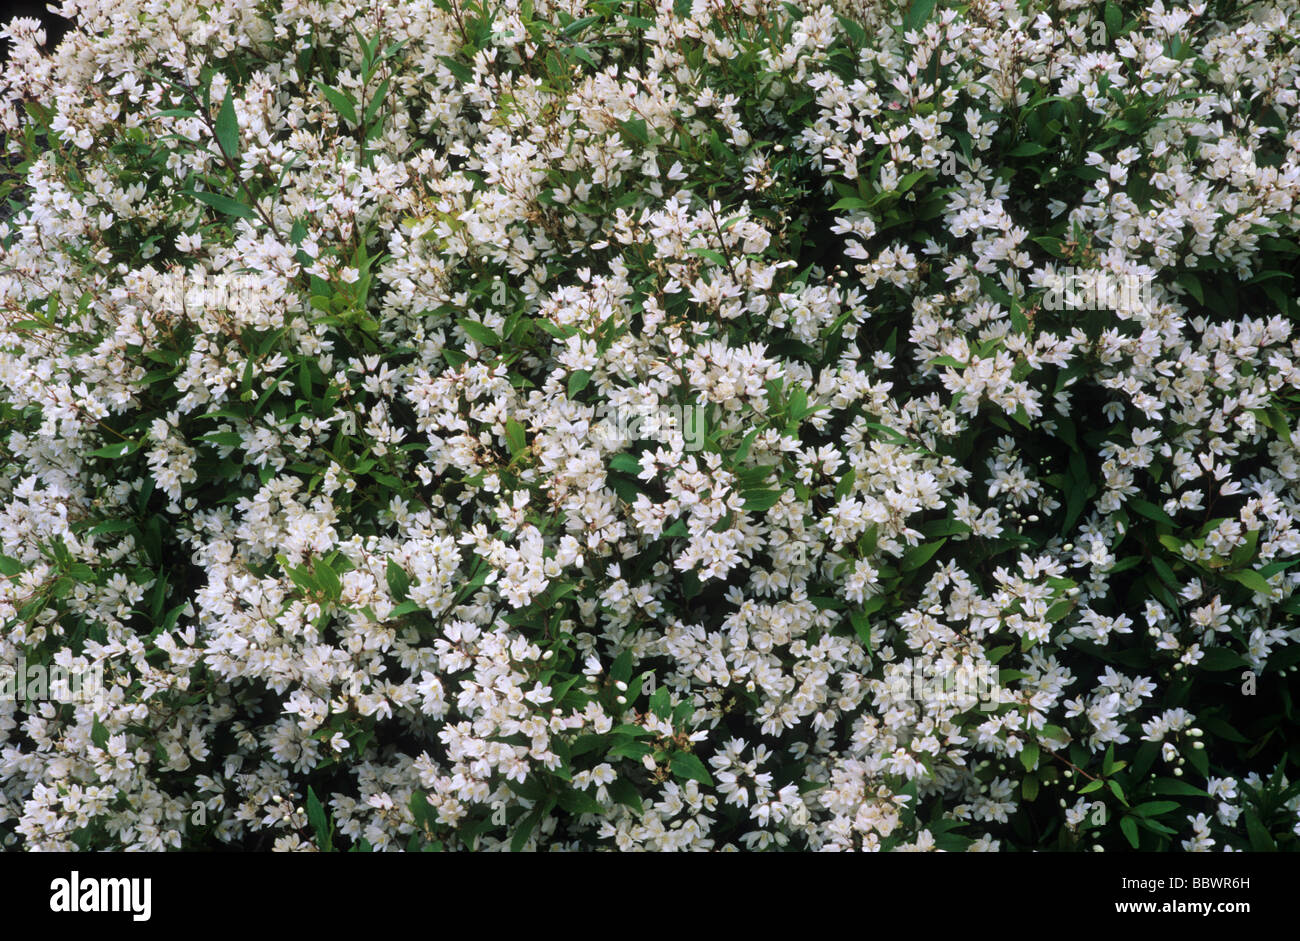 Deutzia gracilis 'Nikko' fiore bianco fiori del giardino di piante vegetali Foto Stock